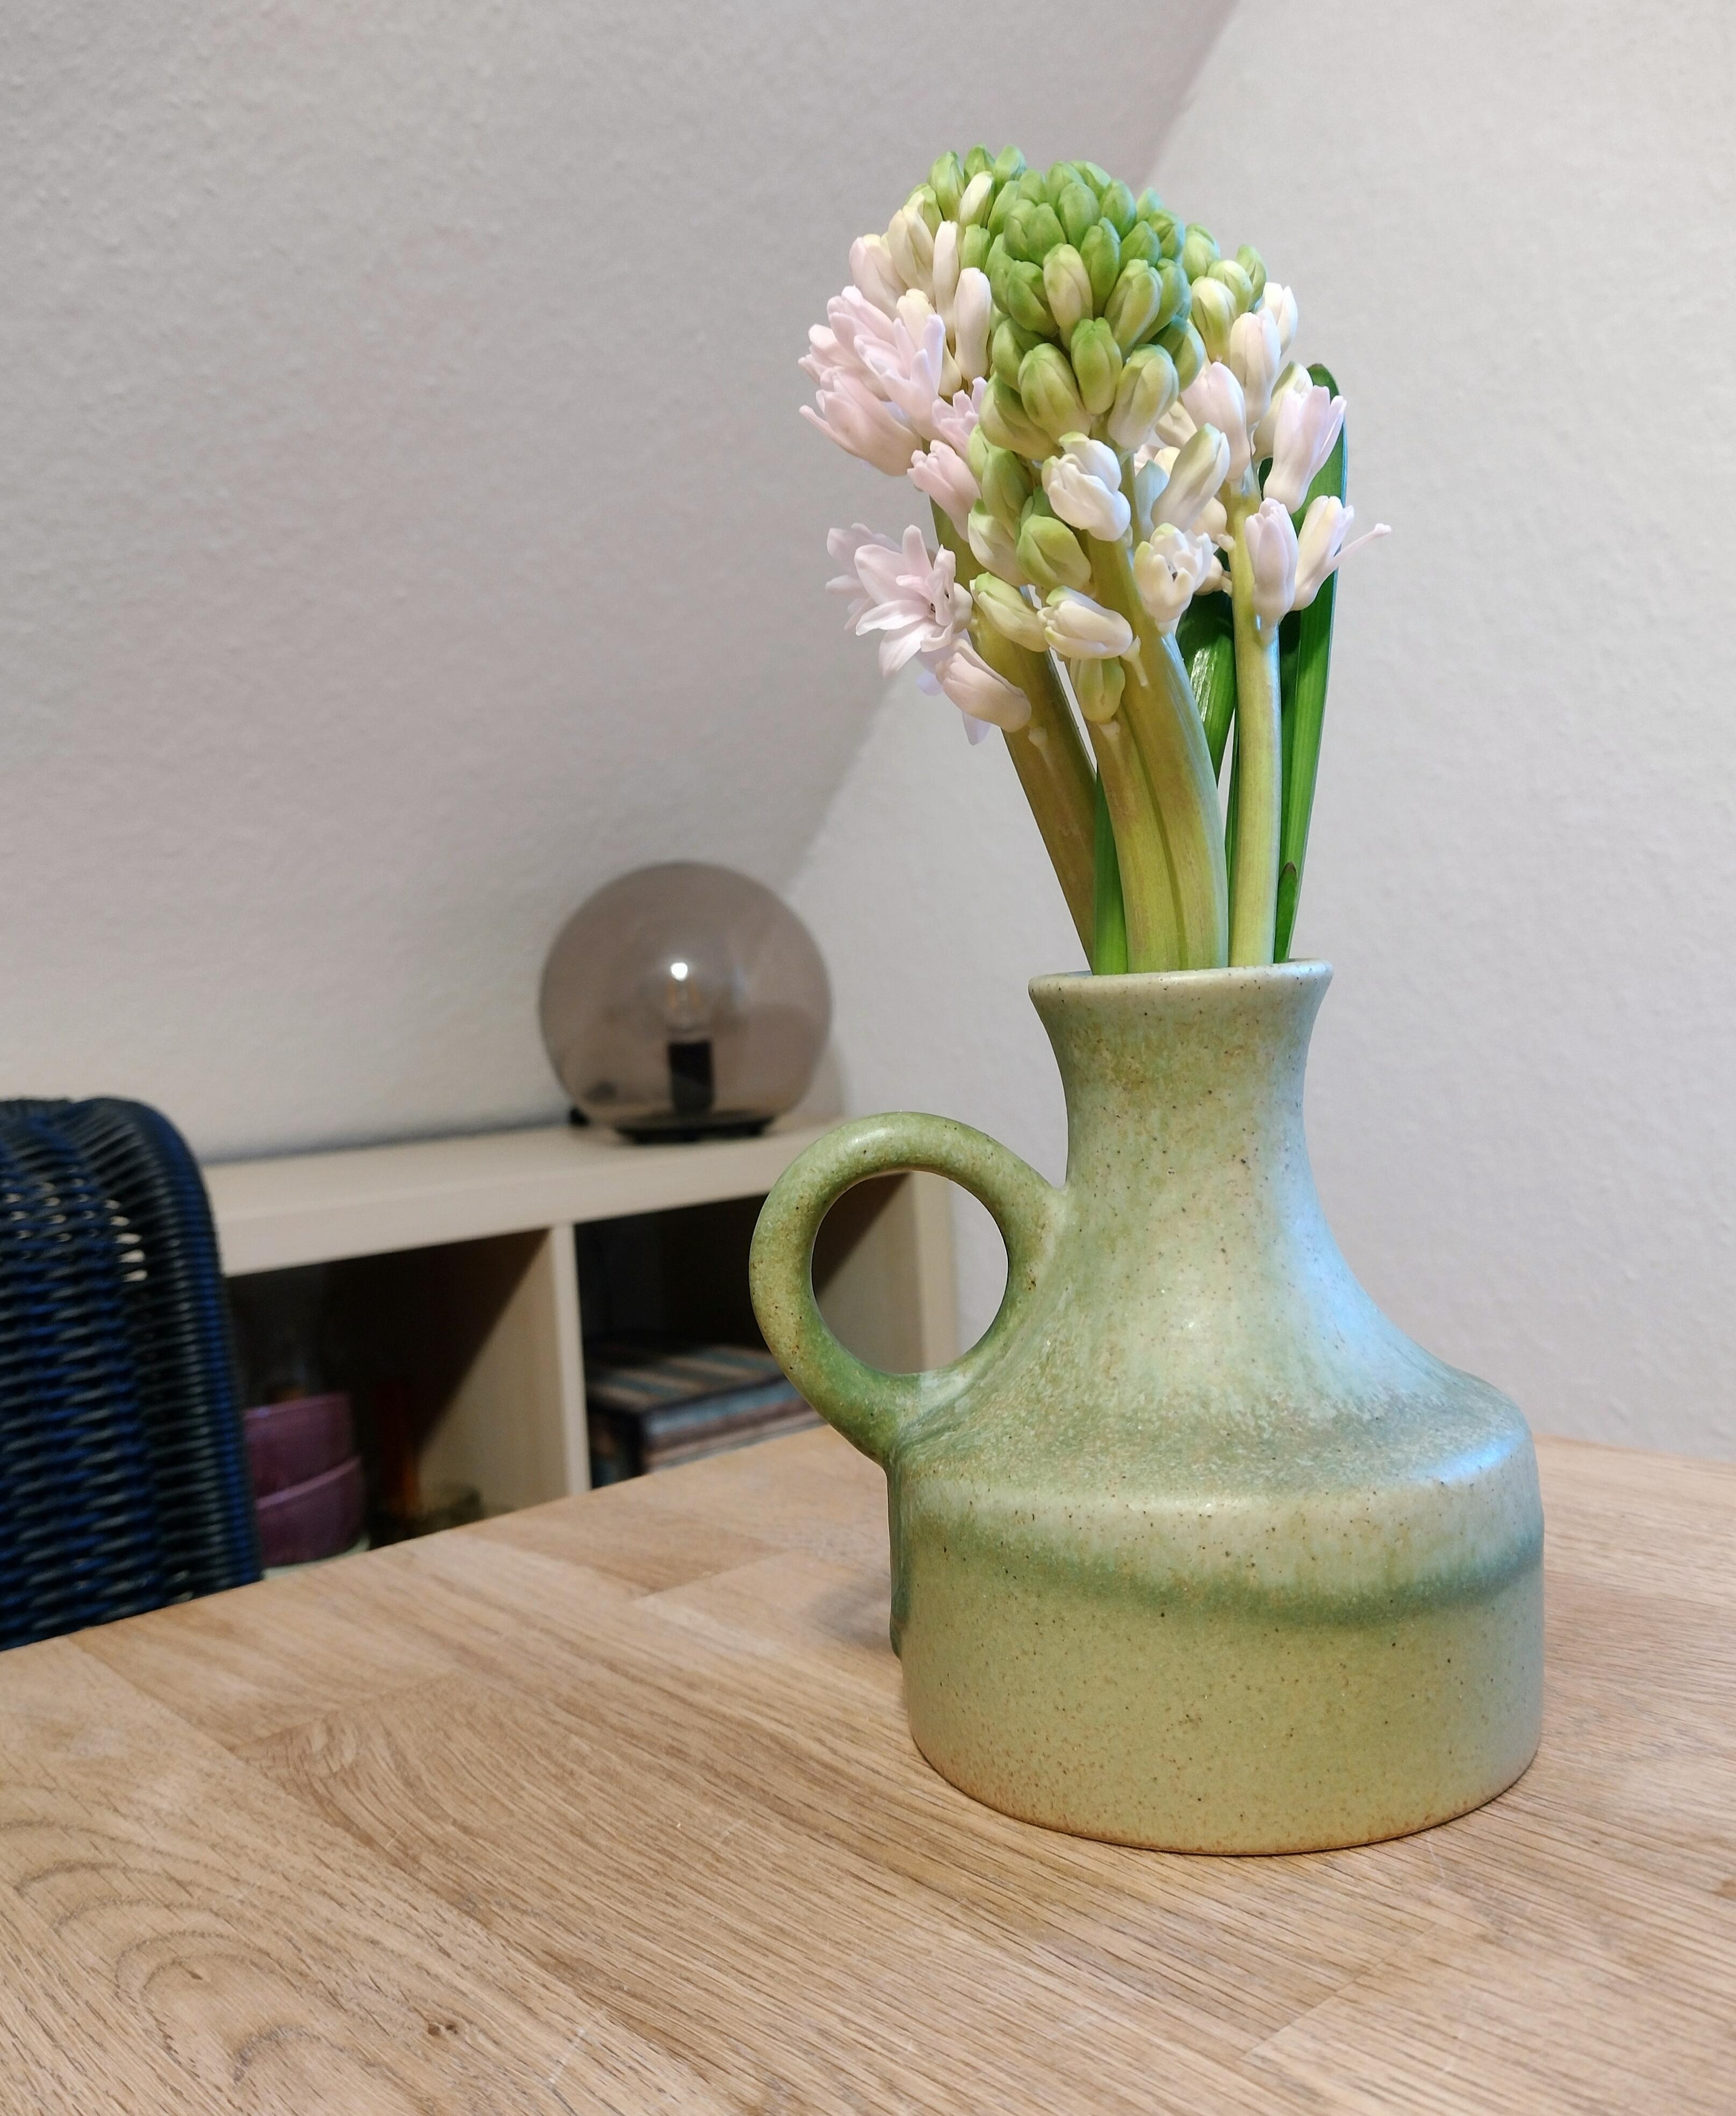 Frühlingsboten 🩷💚
#freshflowerfriday #frischeblumen #blumenliebe #vintagevase #keramikvase #hyacinthen